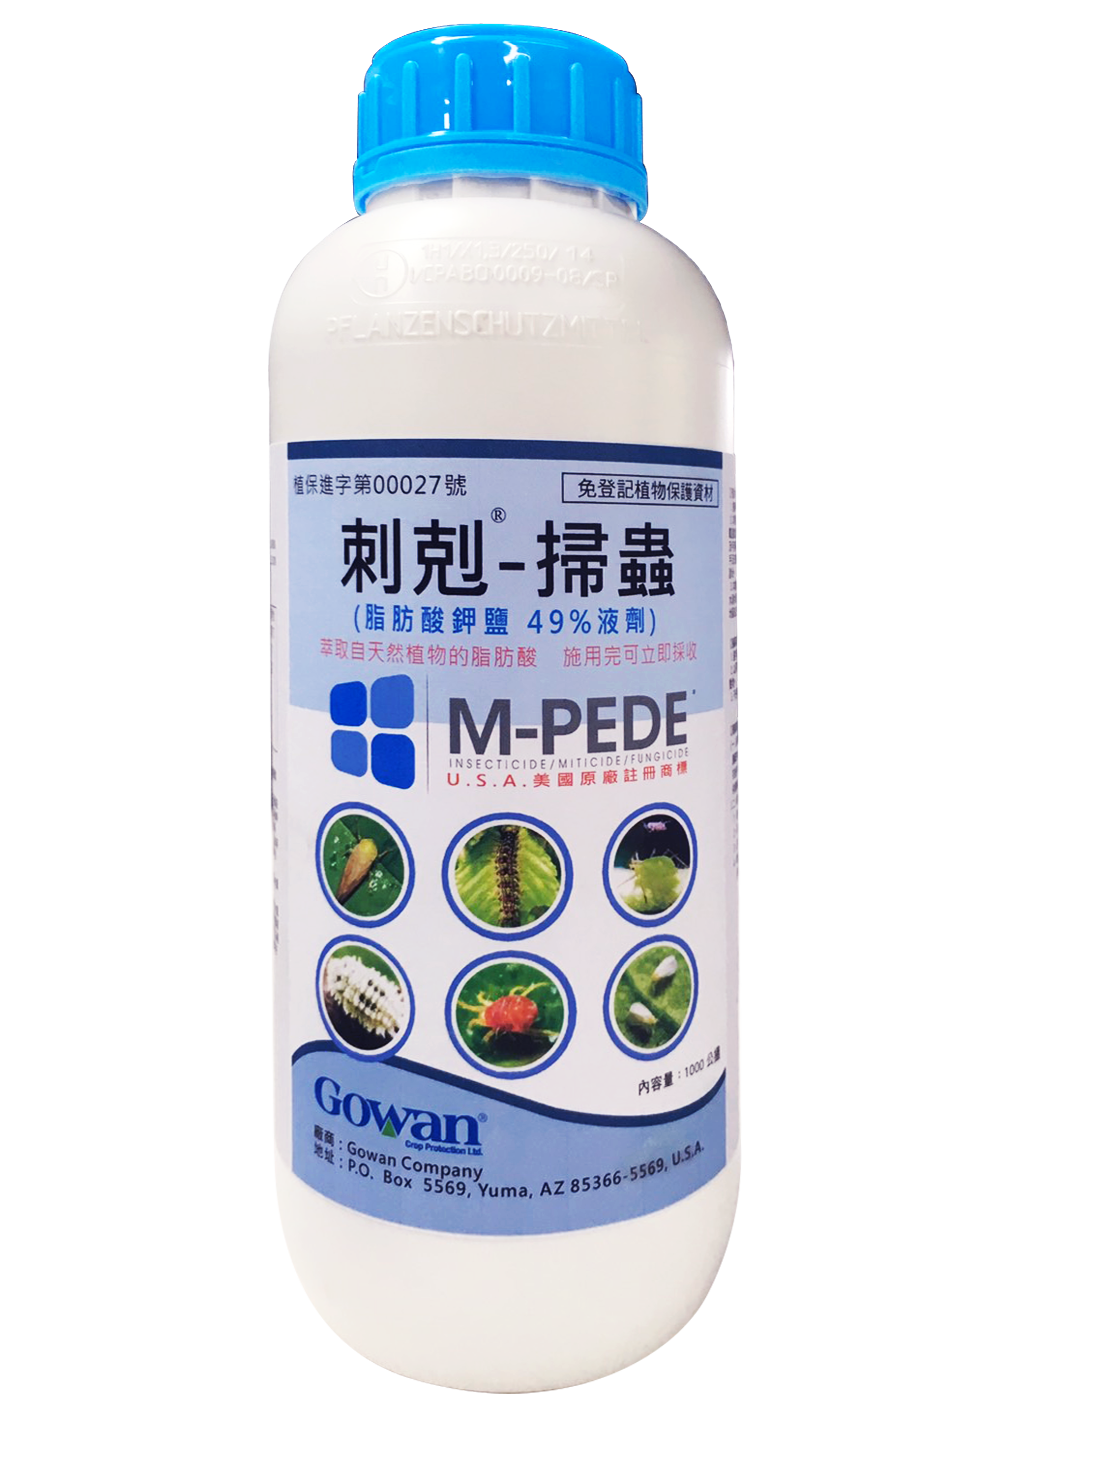 刺剋-掃蟲M-PEDE(Potassium Salts of Fatty Acids 49%SL)